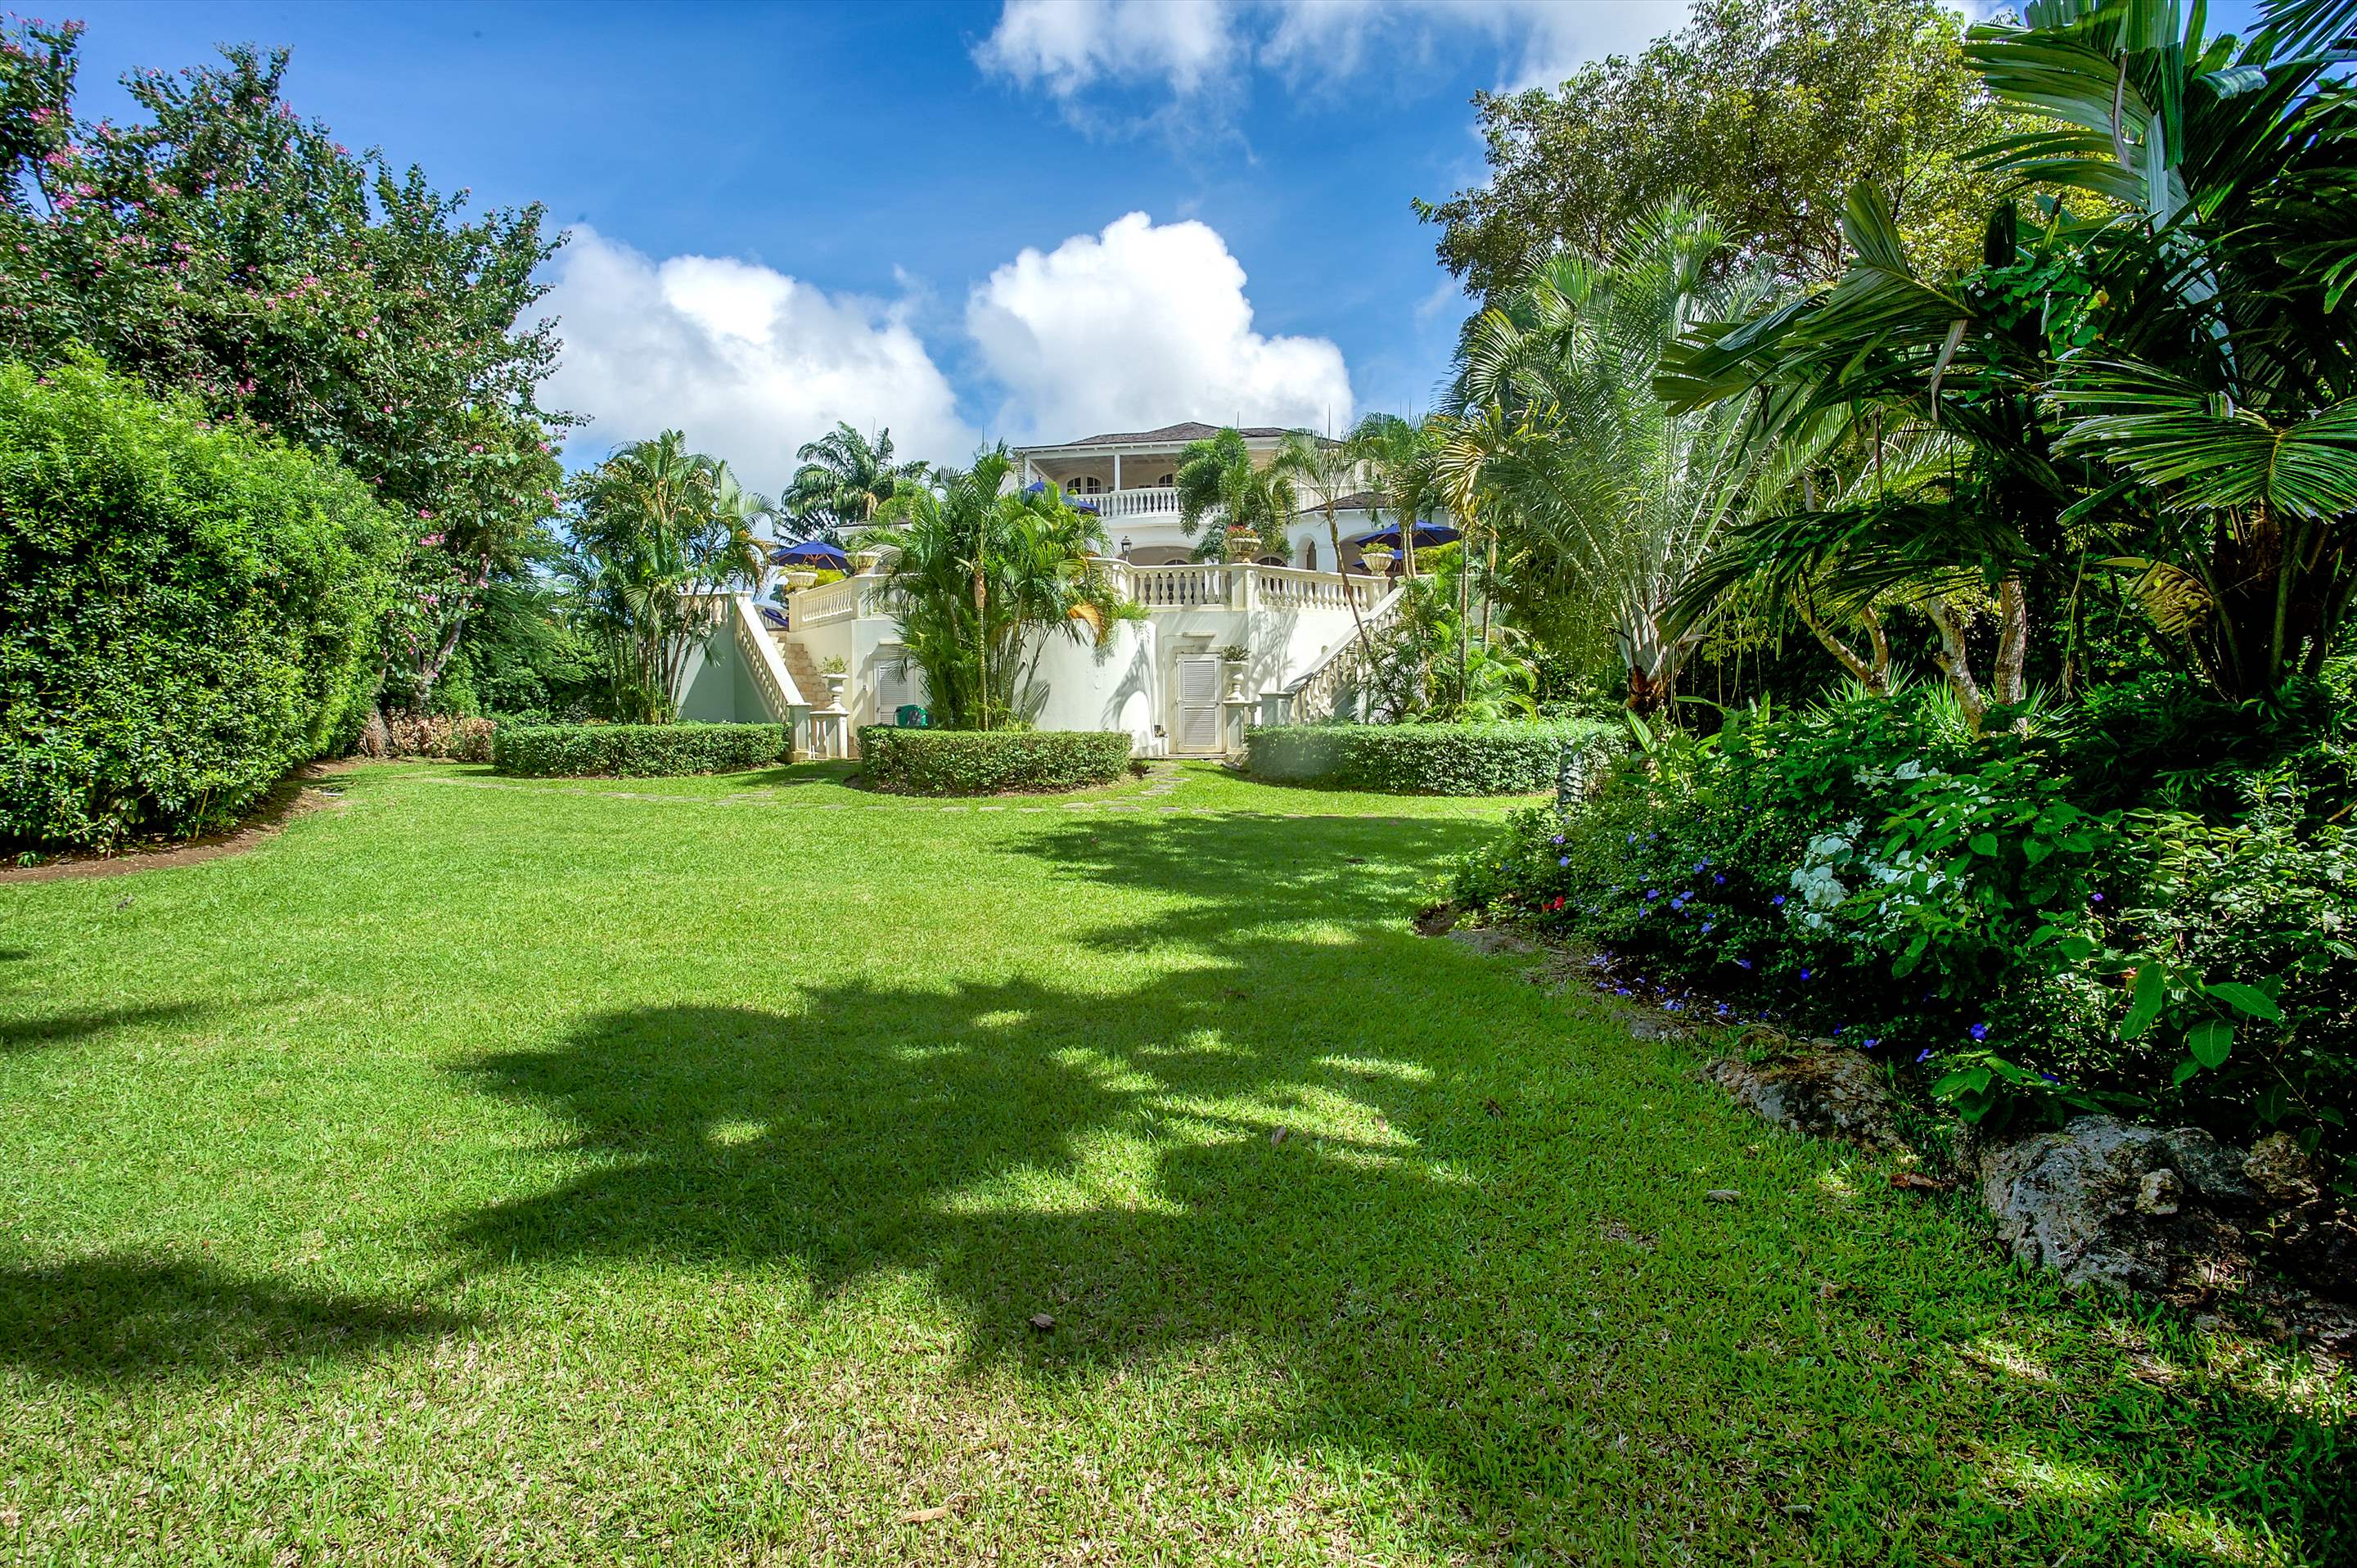 Plantation House, Royal Westmoreland, 4 bedroom, 4 bedroom villa in St. James & West Coast, Barbados Photo #23